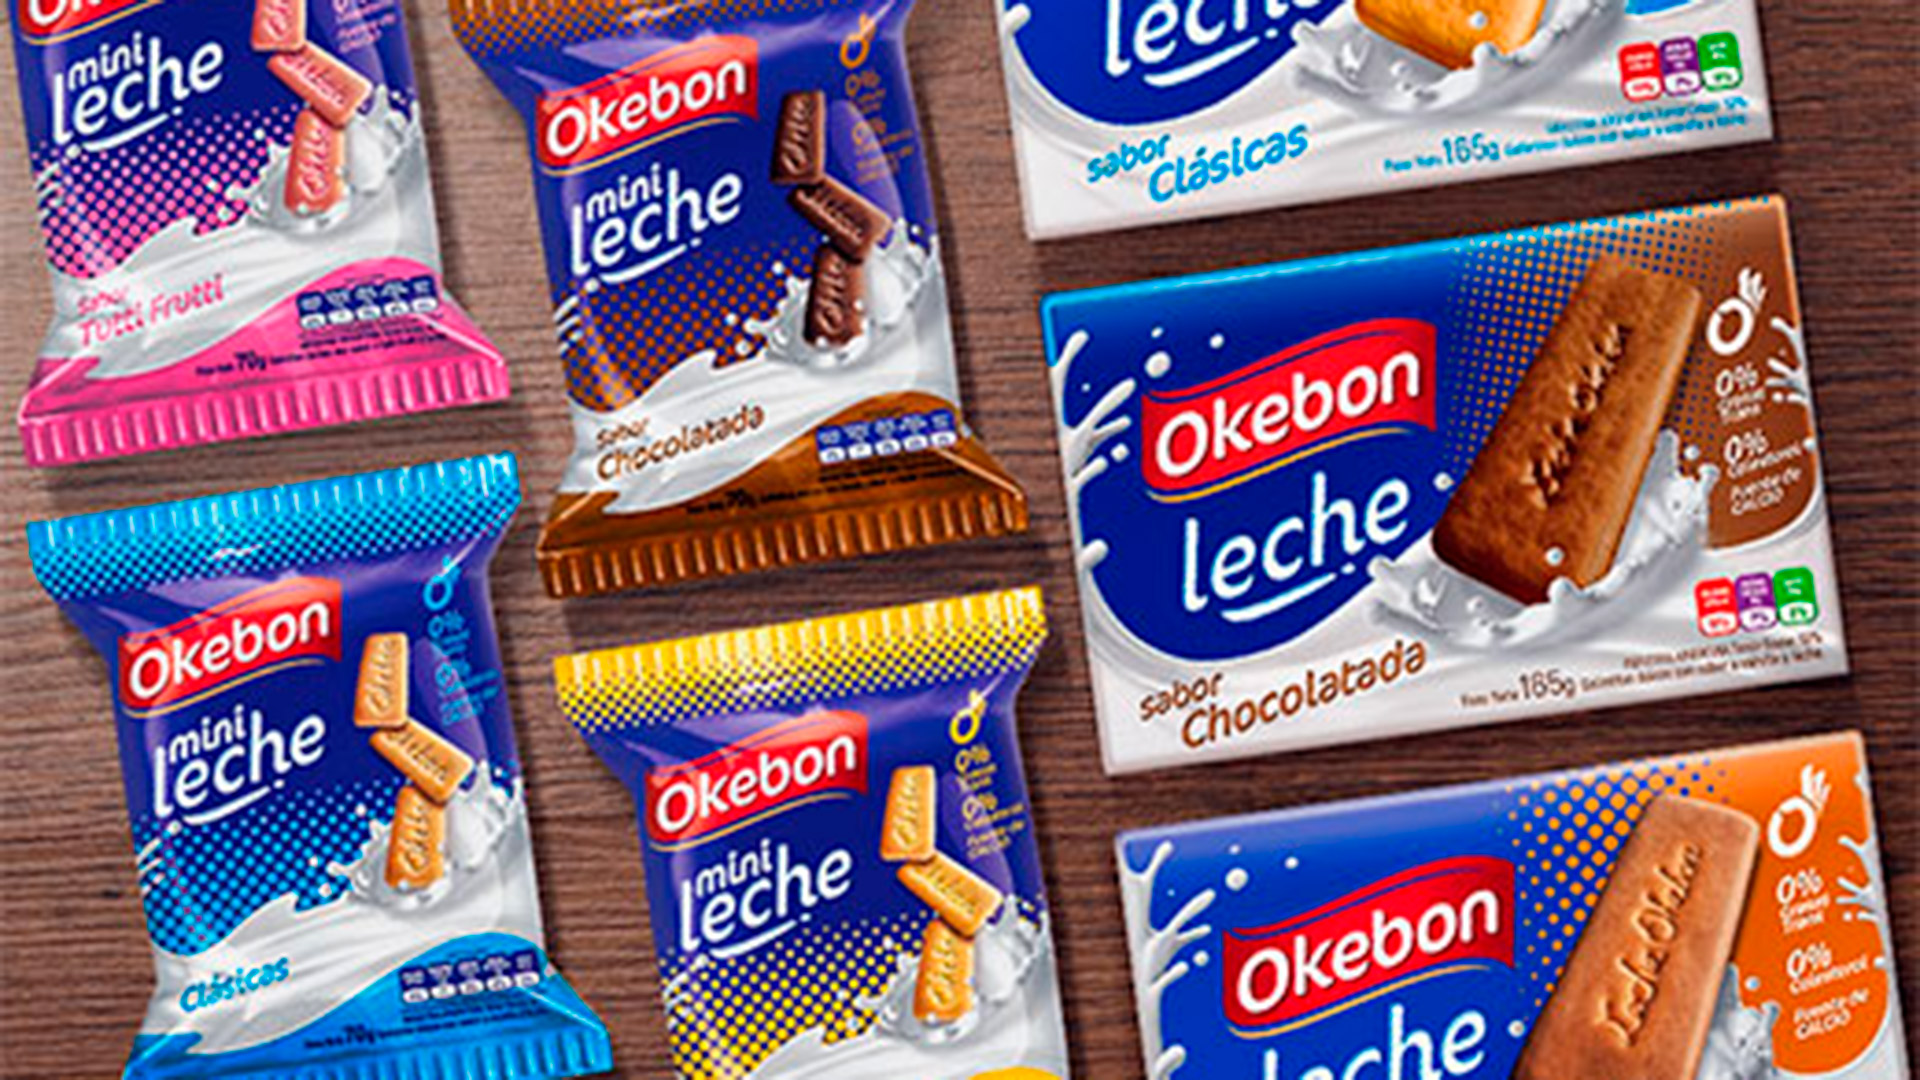 Las galletitas Okebon, una de las principales marcas de alimentos del grupo vendido